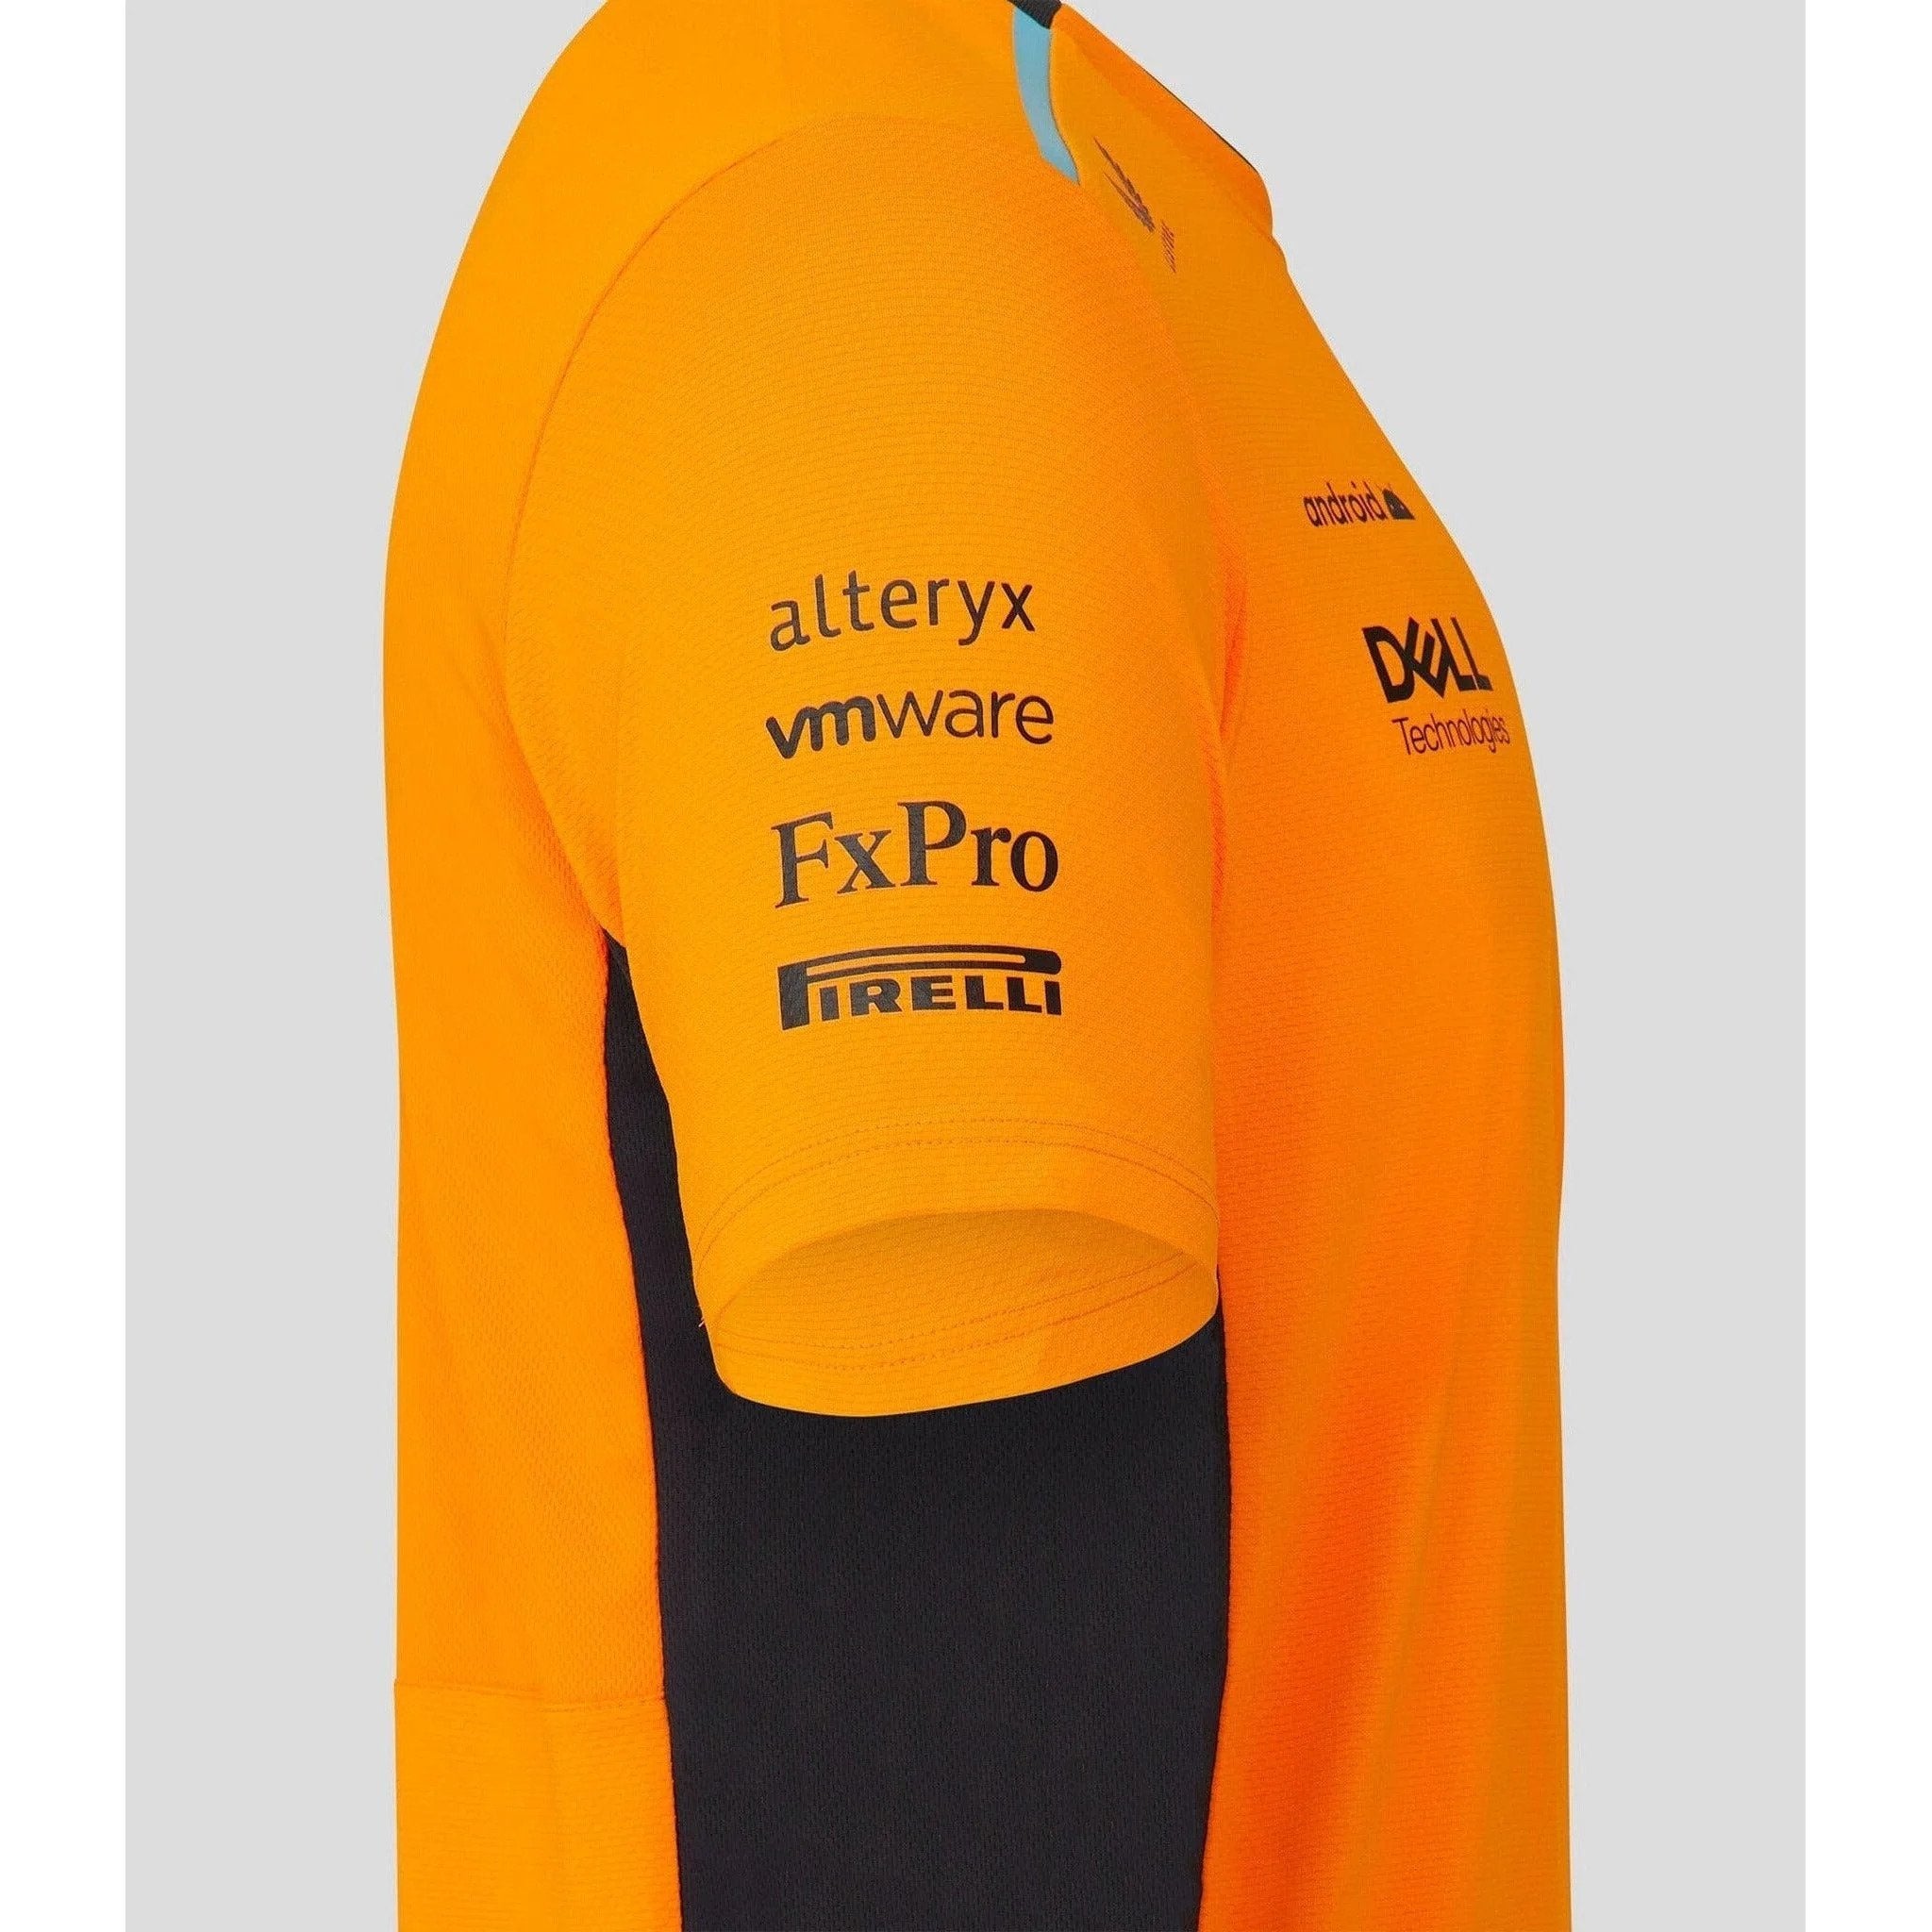 McLaren F1 Men's 2023 Team Set Up T-Shirt - Papaya/Phantom